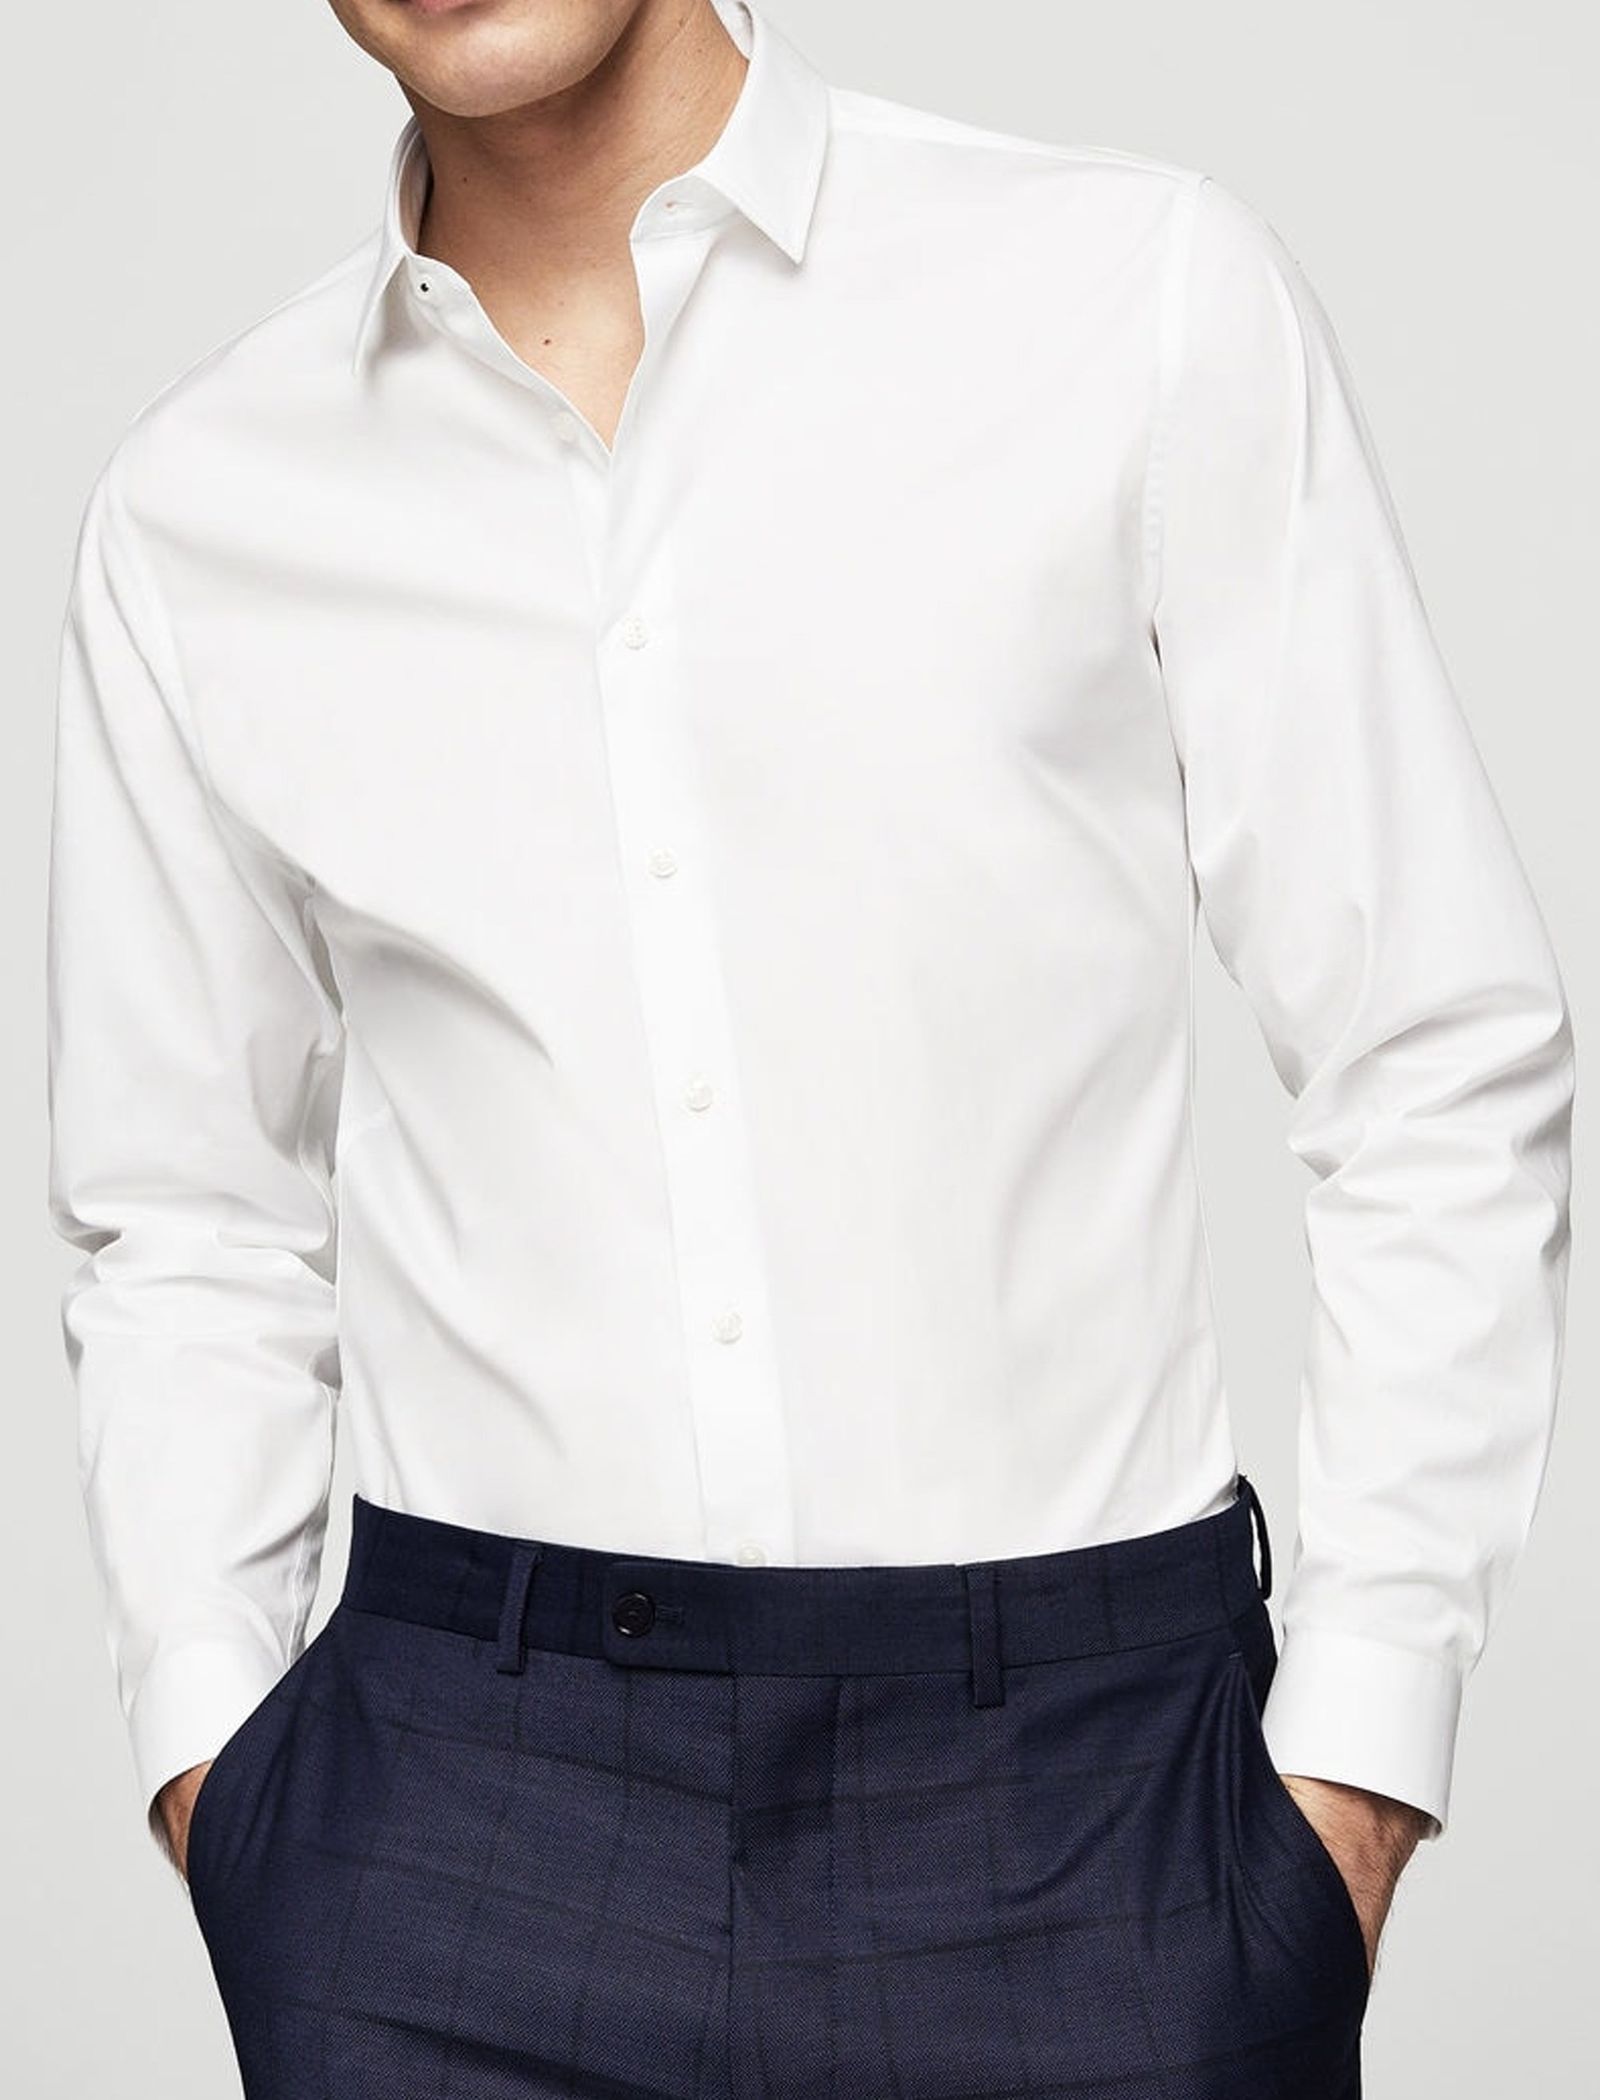 پیراهن نخی آستین بلند مردانه - مانگو - سفید - 3